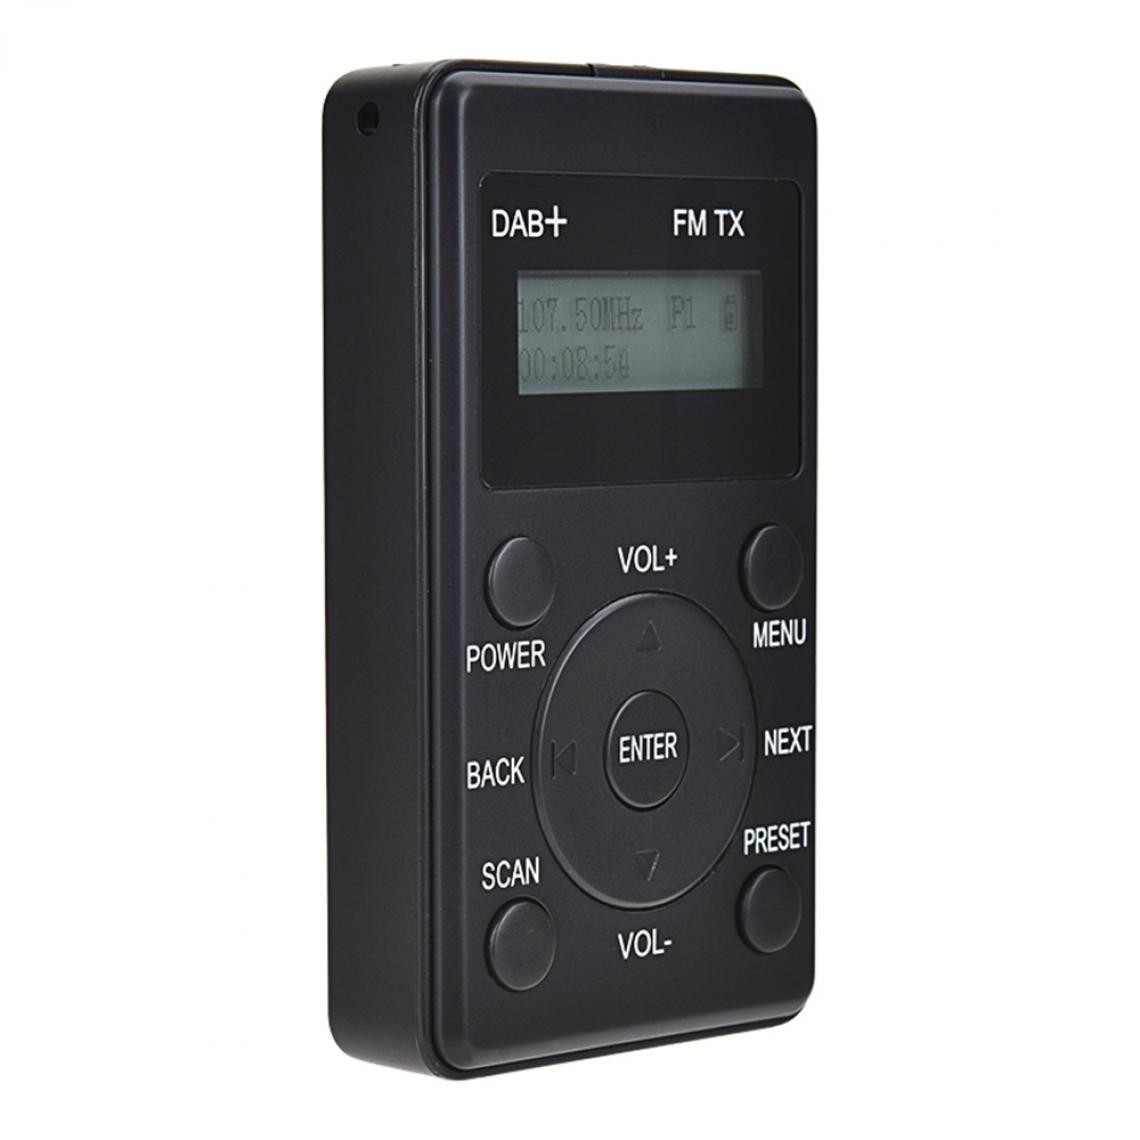 Universal - Mini radio FM récepteur DAB + FM avec casque émetteur DAB FM portable radio numérique rechargeable USB Voyage quotidien | Radio(Le noir) - Radio